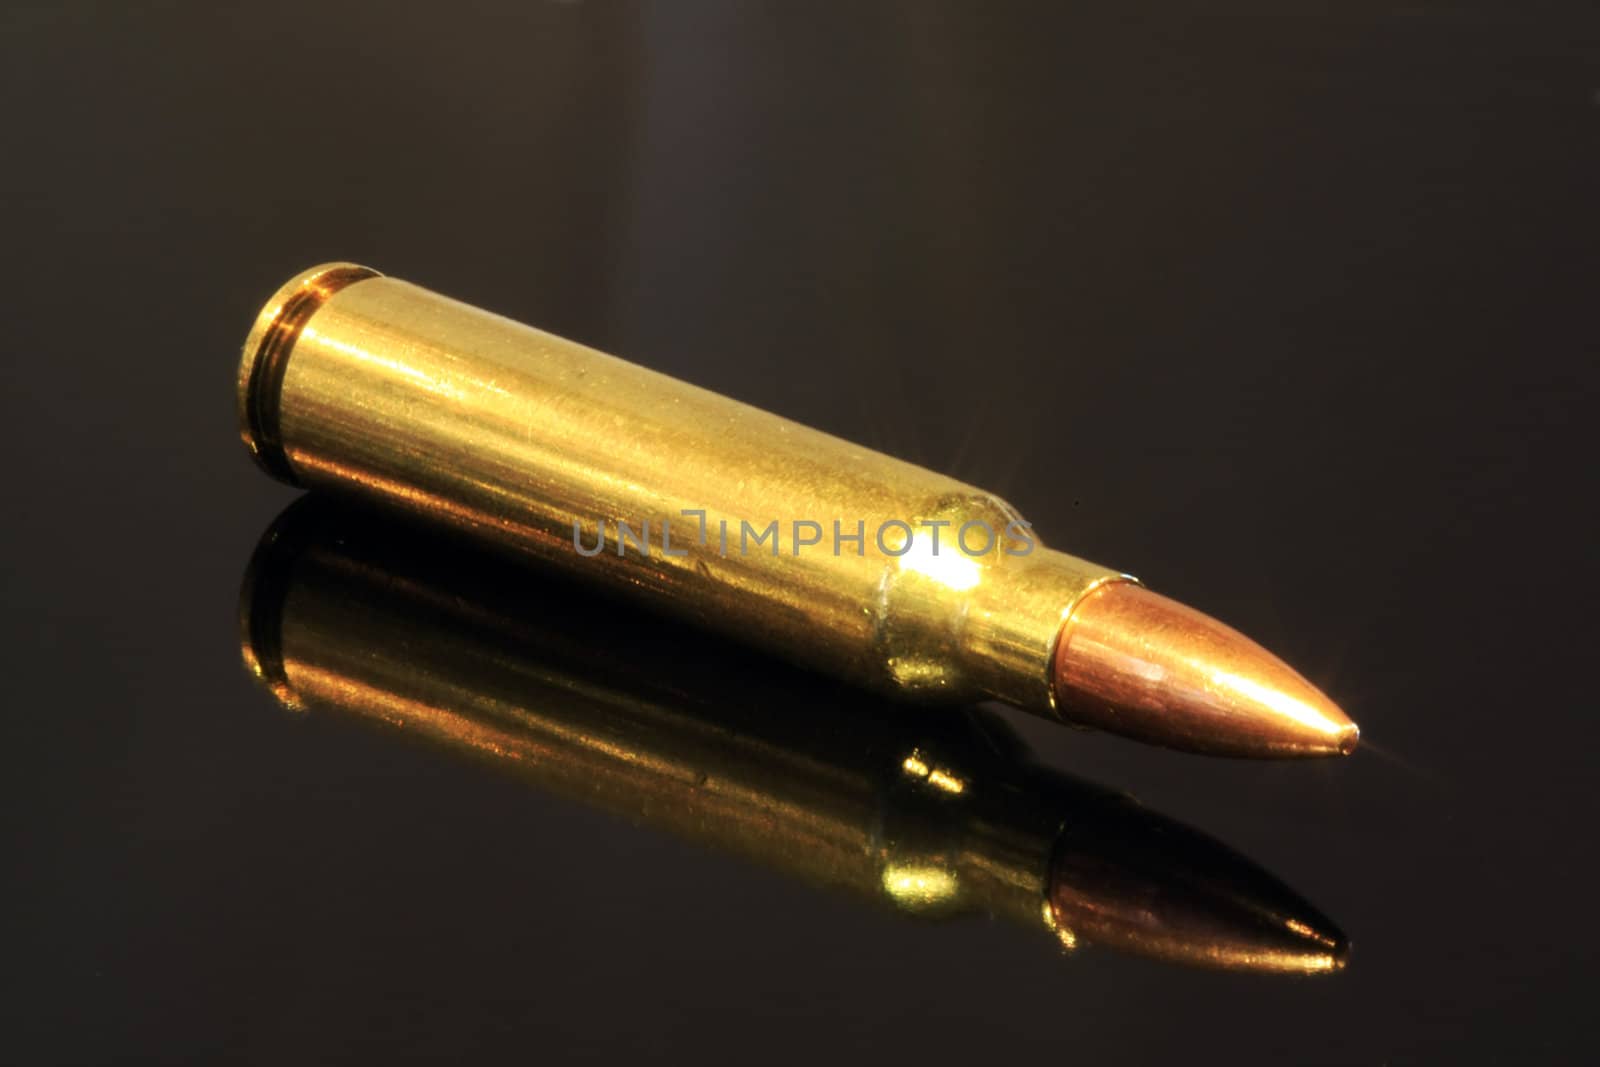 R5 / AK-47 bullet